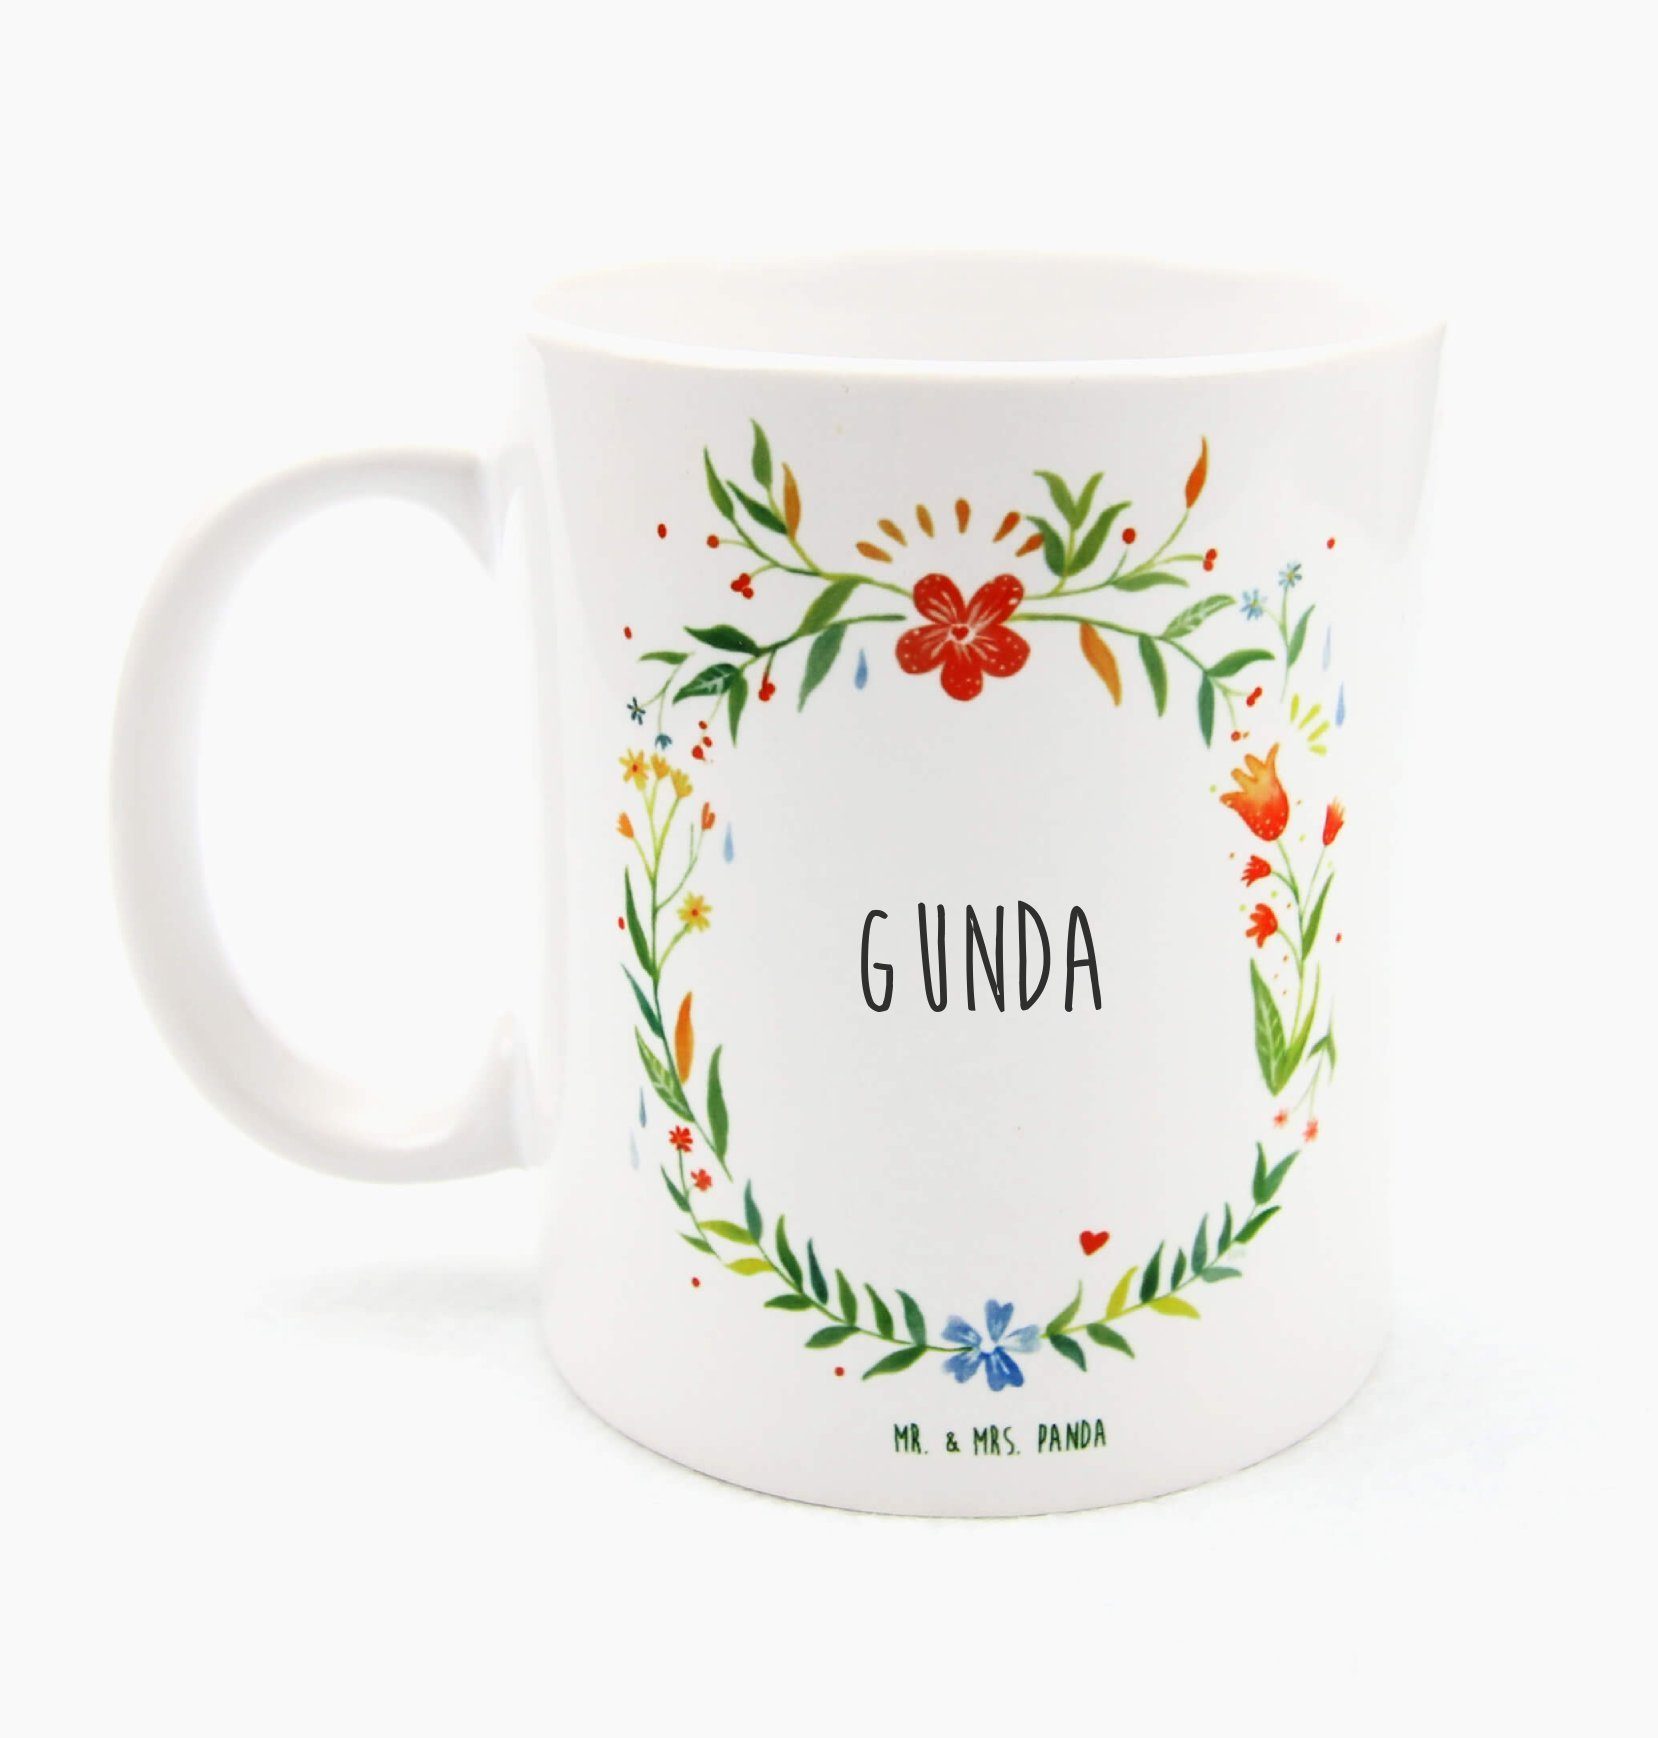 Mr. & Mrs. Panda Tasse Gunda - Geschenk, Porzellantasse, Büro Tasse, Kaffeetasse, Teebecher, Keramik